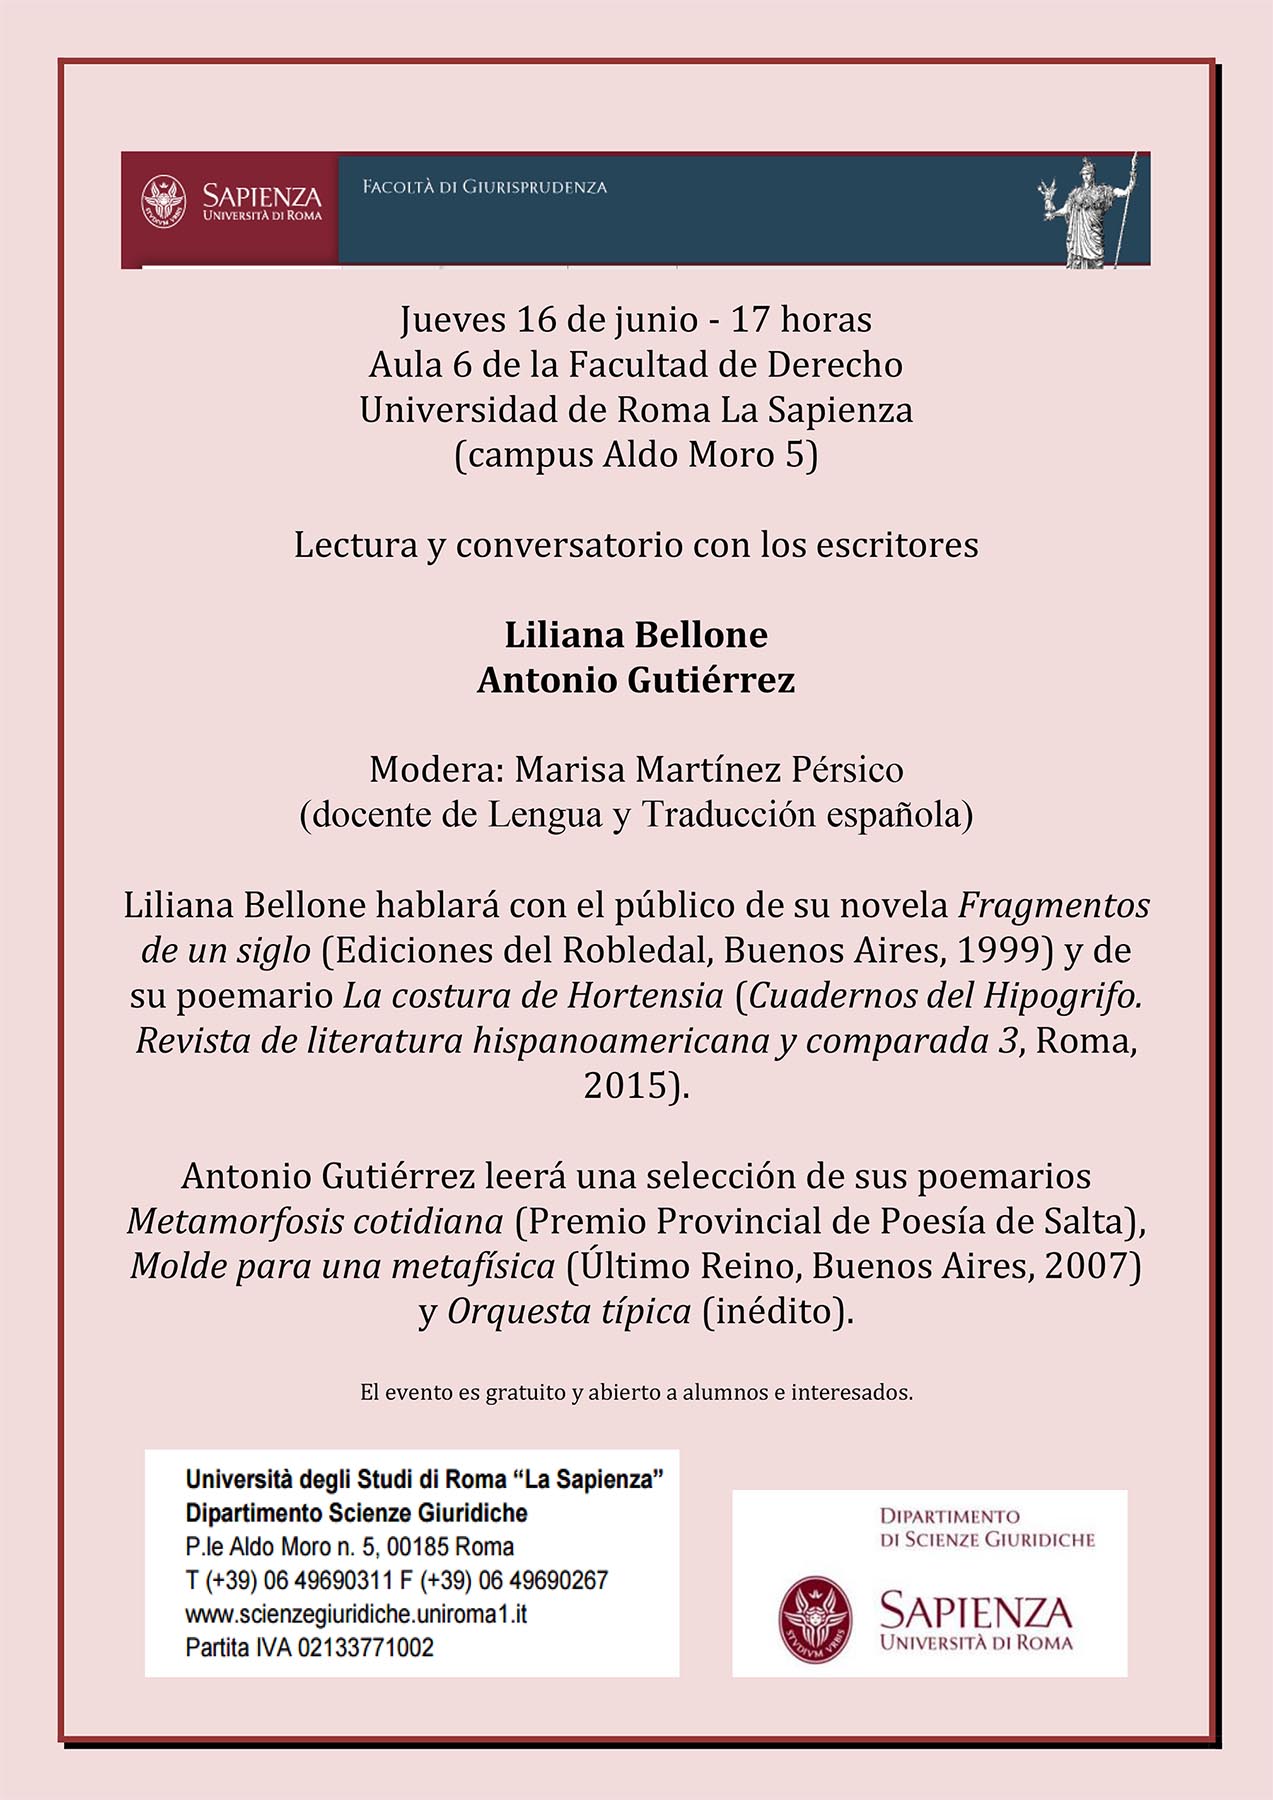 Jueves 16 de junio – Invitación “conversatorio” con los escritores Liliana Bellone/Antonio Gutiérrez